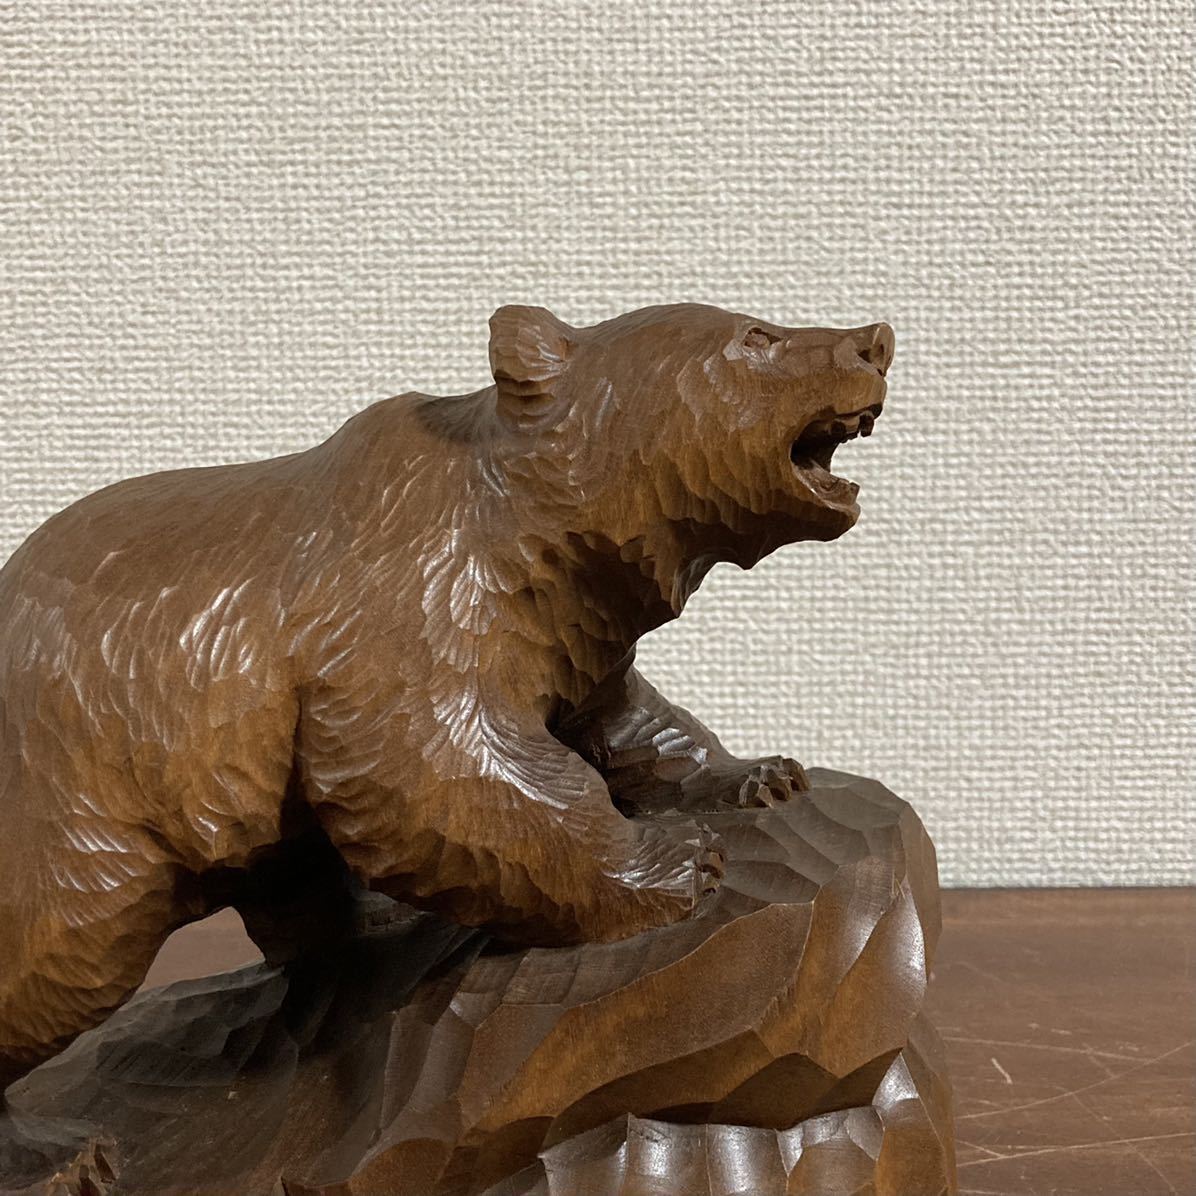 堀井廣治 作 木彫り 熊 吠え熊 高さ17.5cm 北海道 民芸品 工芸品 木彫りの熊 くま クマ 置物 彫刻